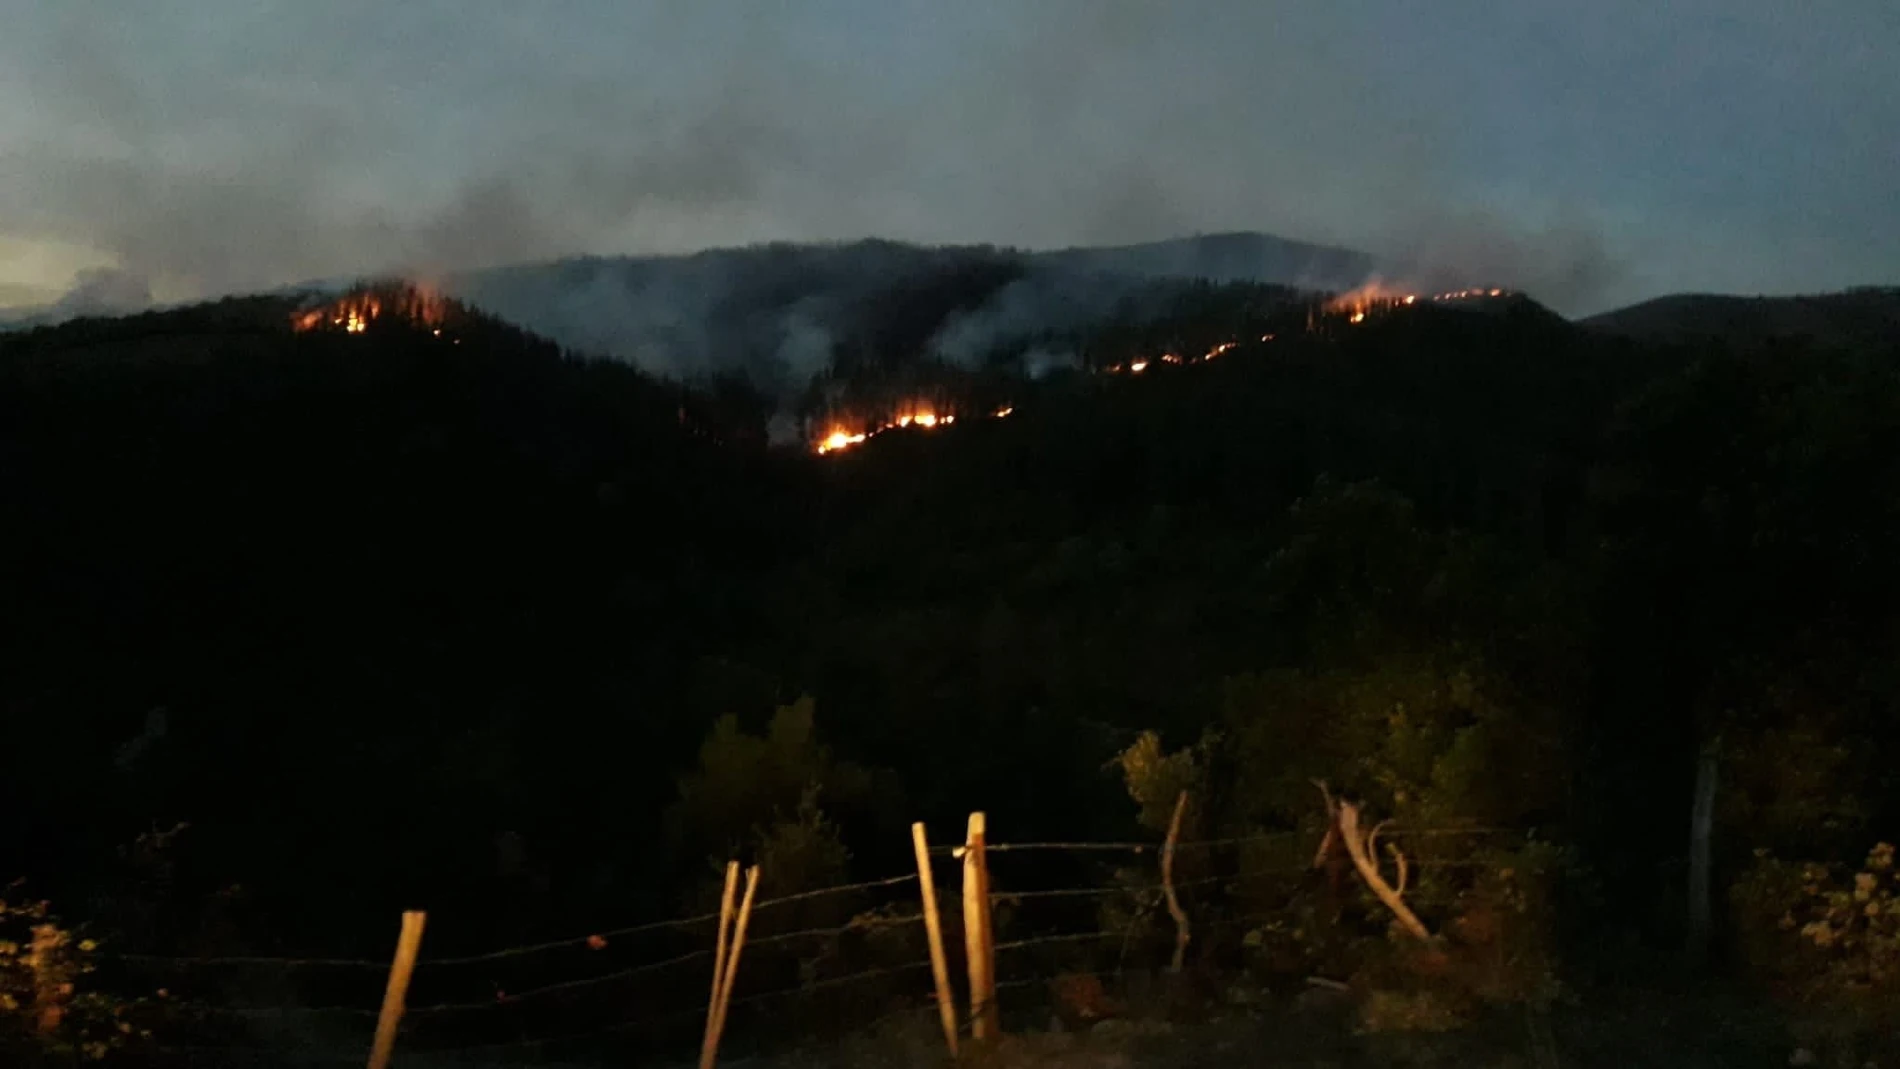 Incendio forestal en el Valle de Mena, BurgosJCYL23/10/2022